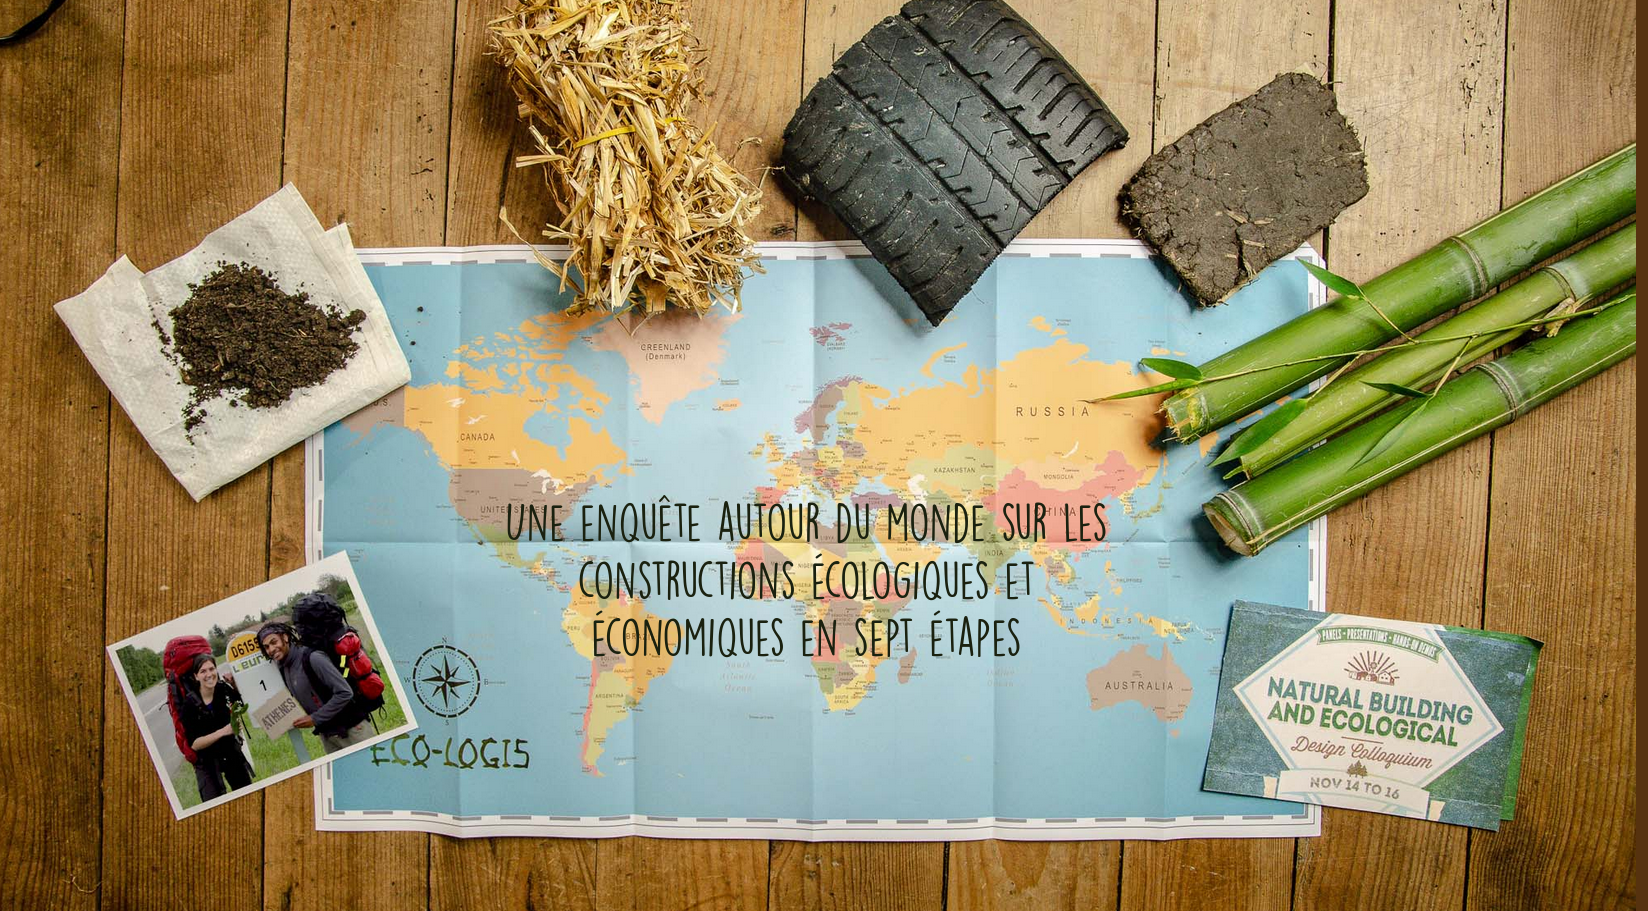 Eco-logis, le tour du monde de l’autoconstruction (webdocumentaire)